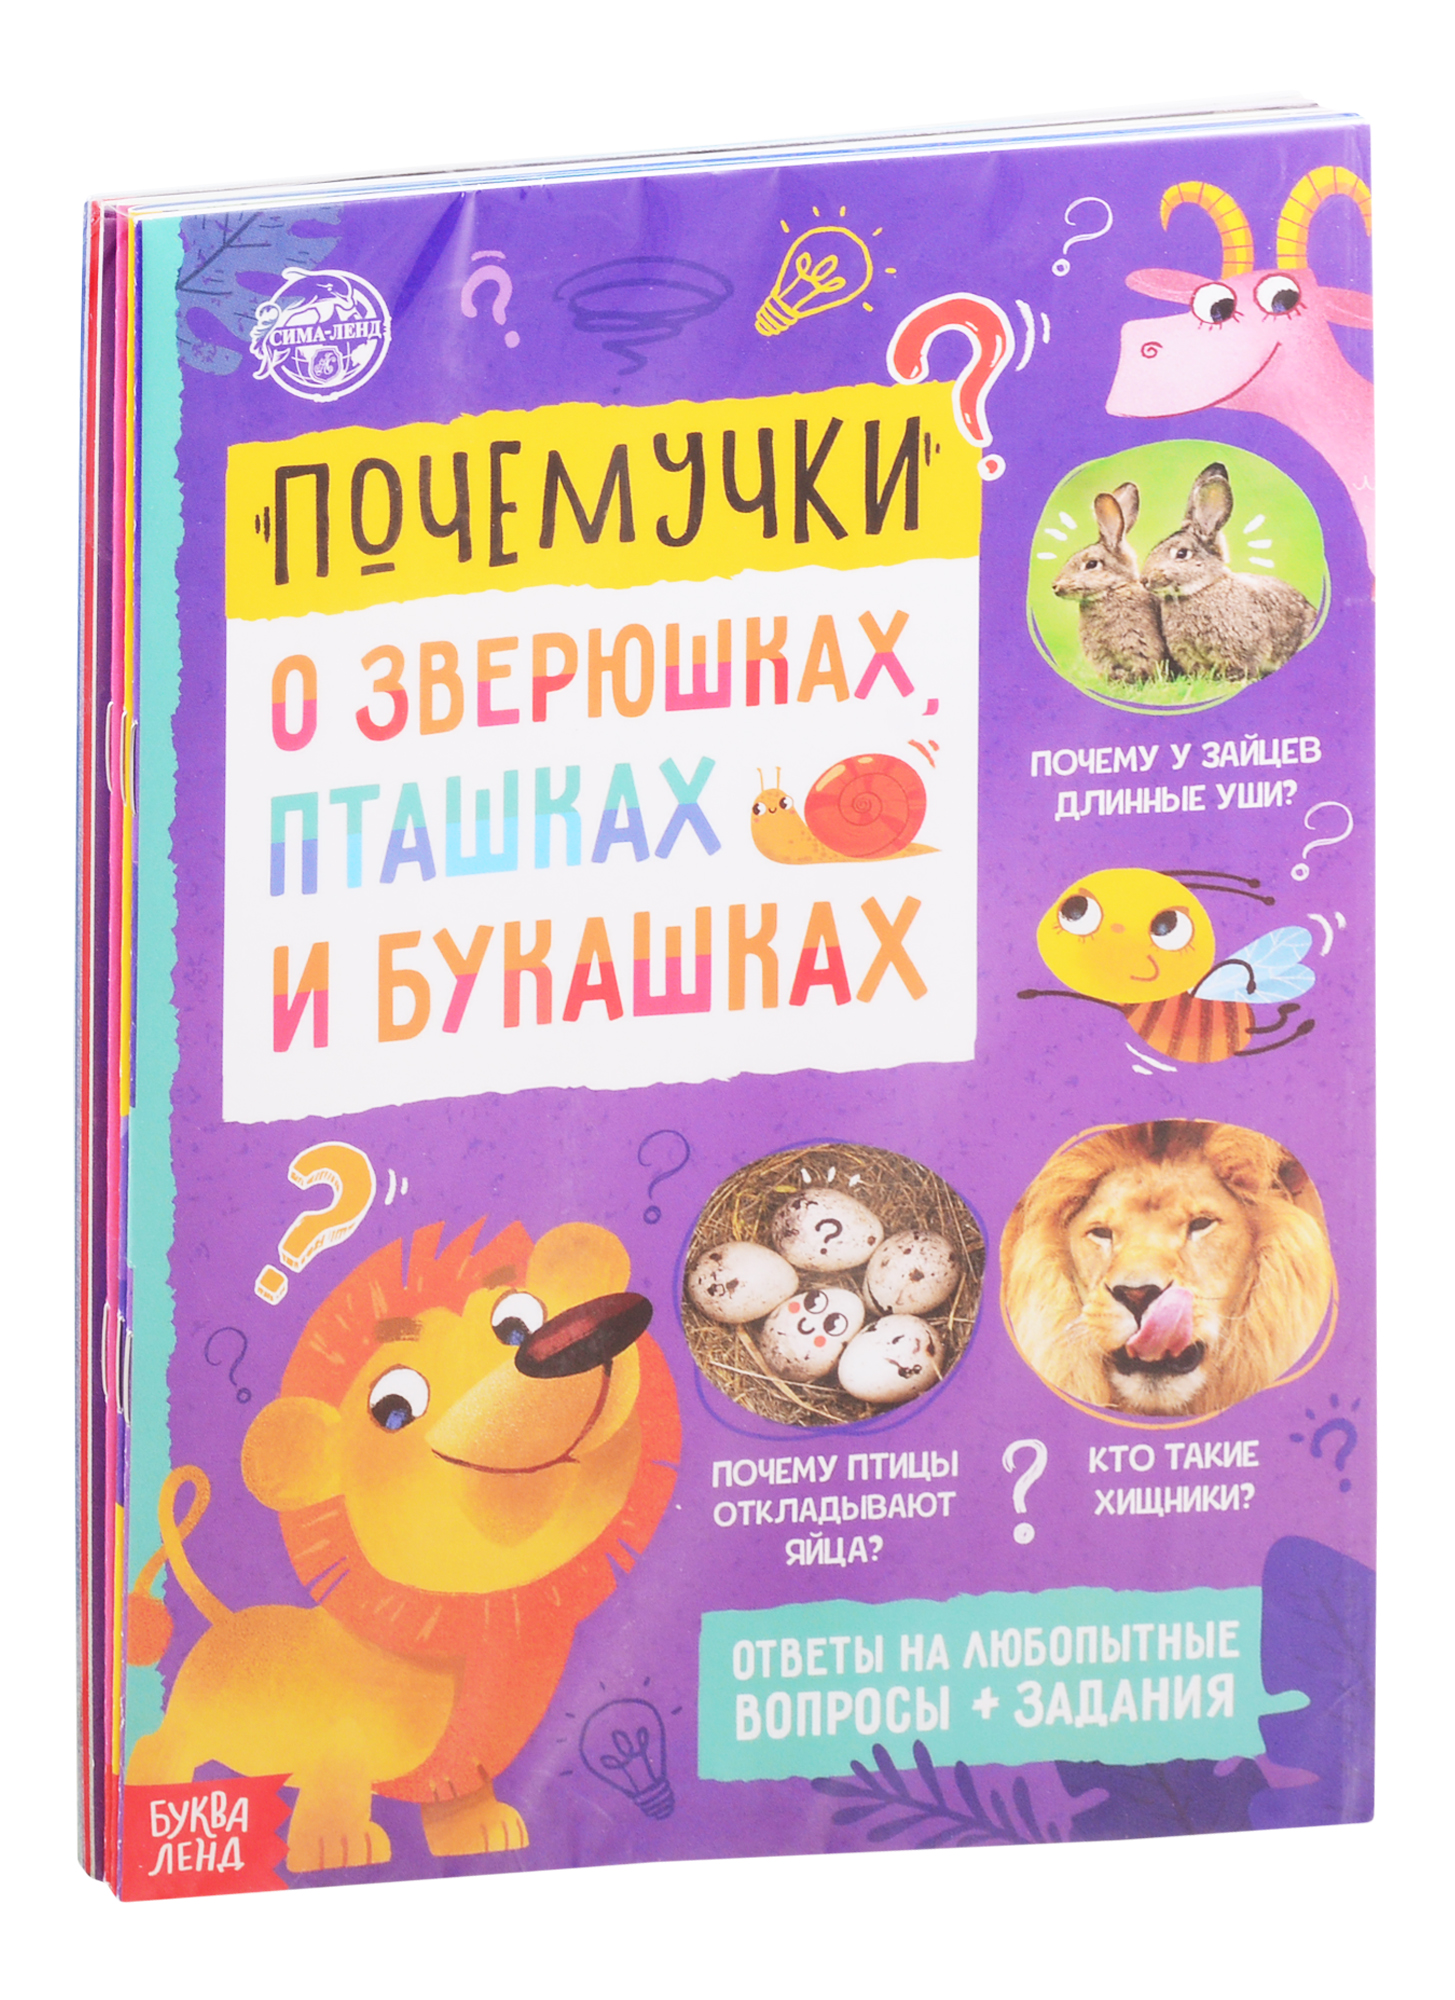 Обучающие набор Почемучки (комплект из 6 книг) обучающие набор маша и медведь комплект из 6 книг